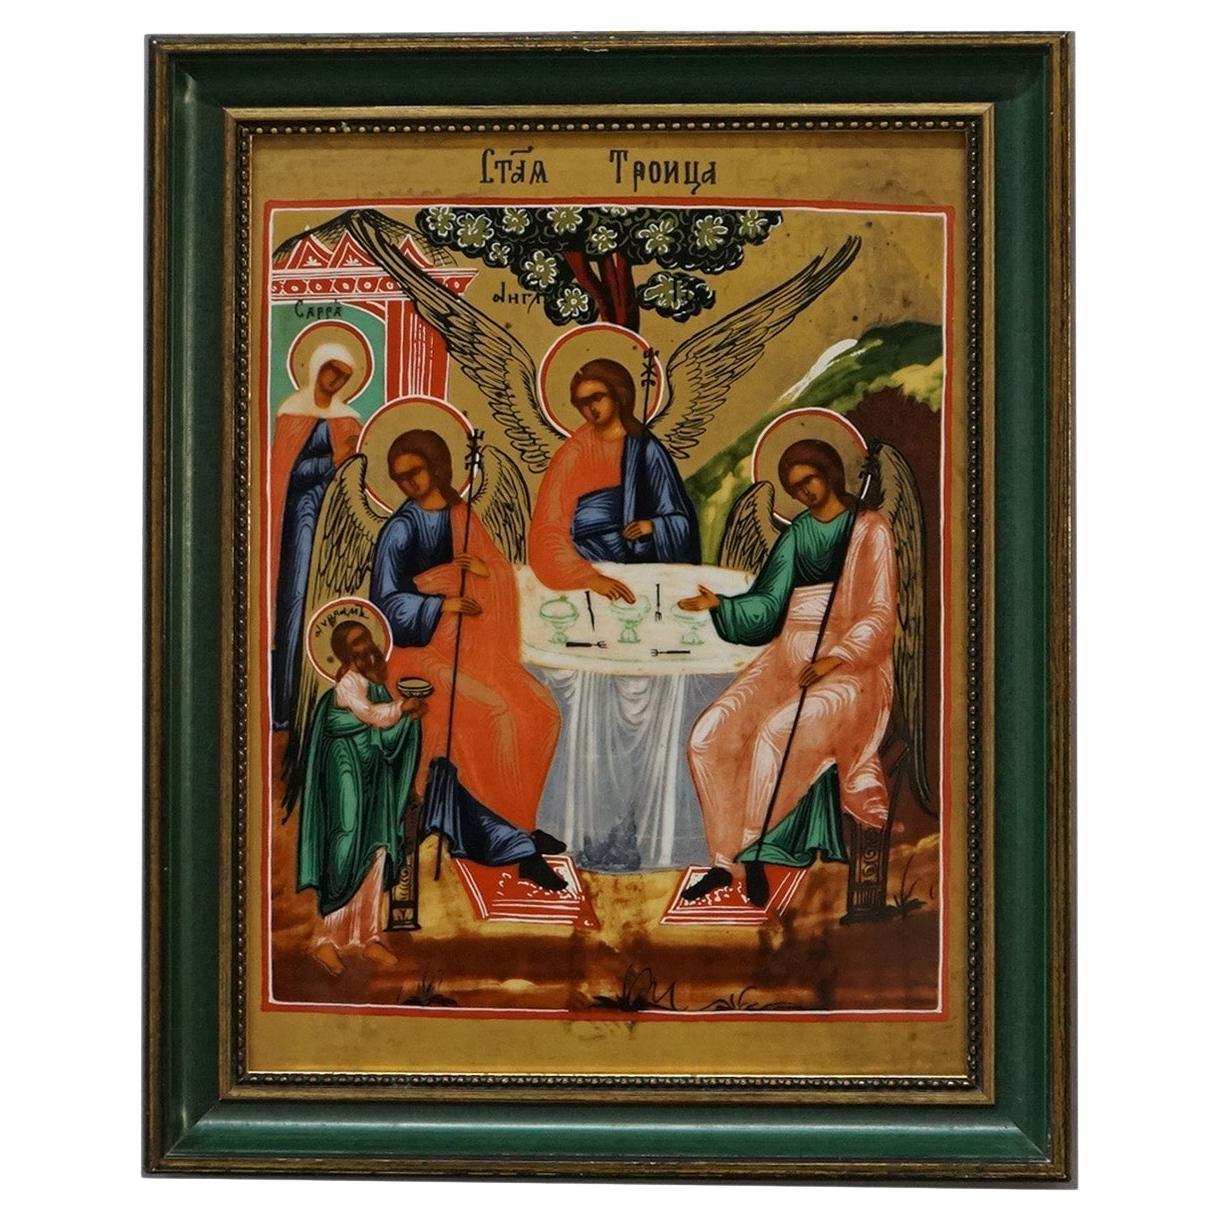 Heinrich Framed Religious Porcelain Plaque, Die Heilige Dreifalti, 20thC